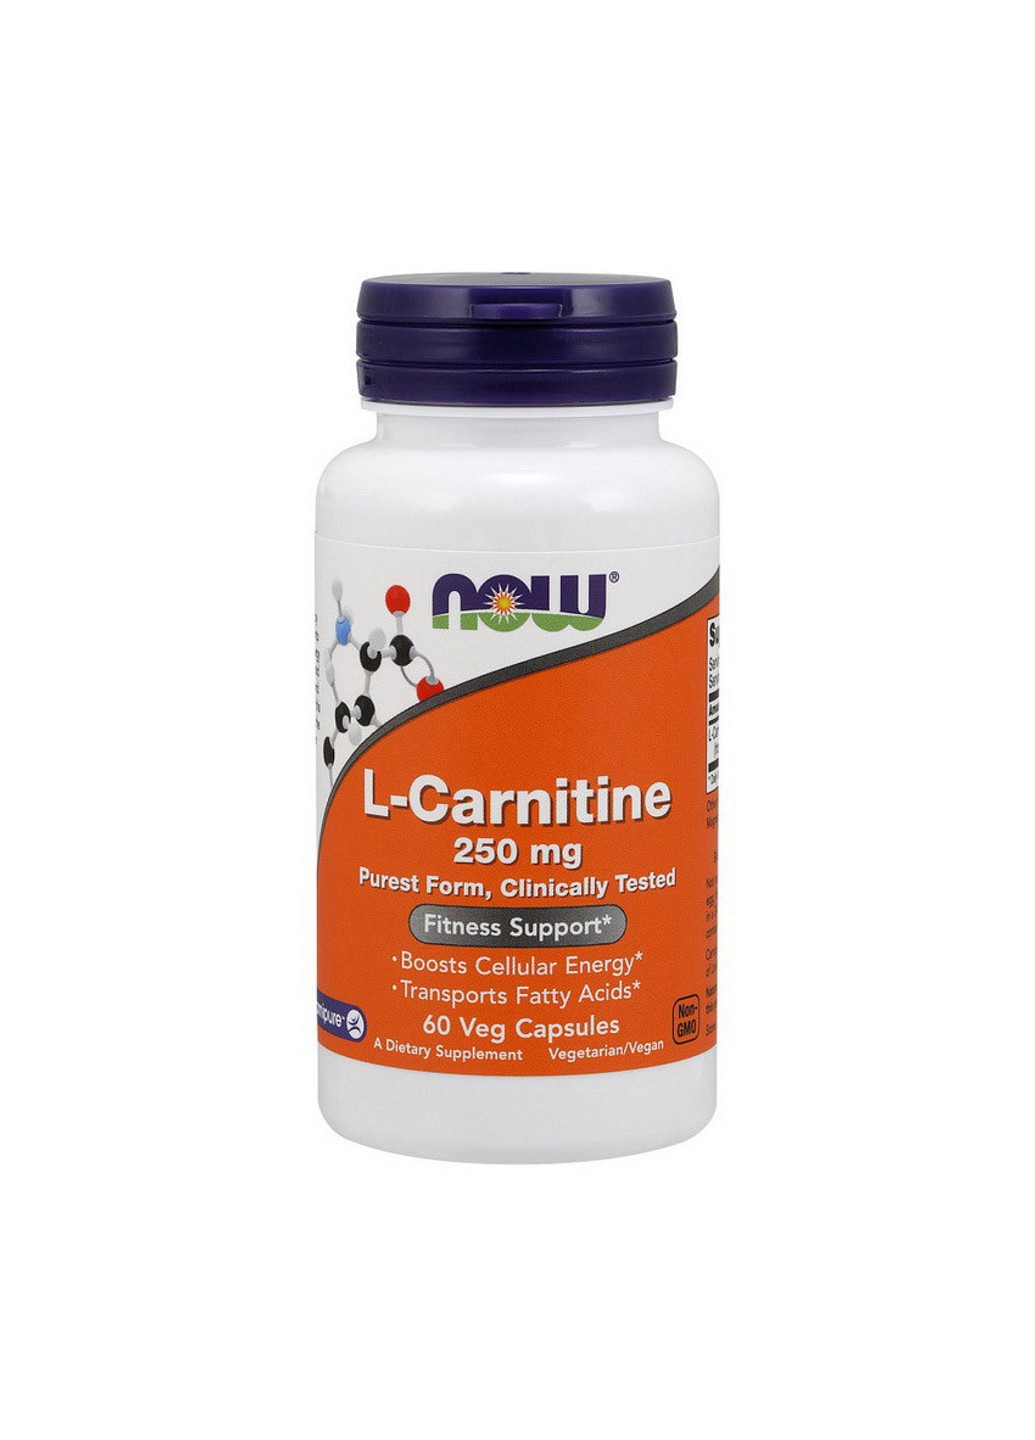 Л-карнитин L-Carnitine 250 mg (60 капс) нау фудс Now Foods (255362166)